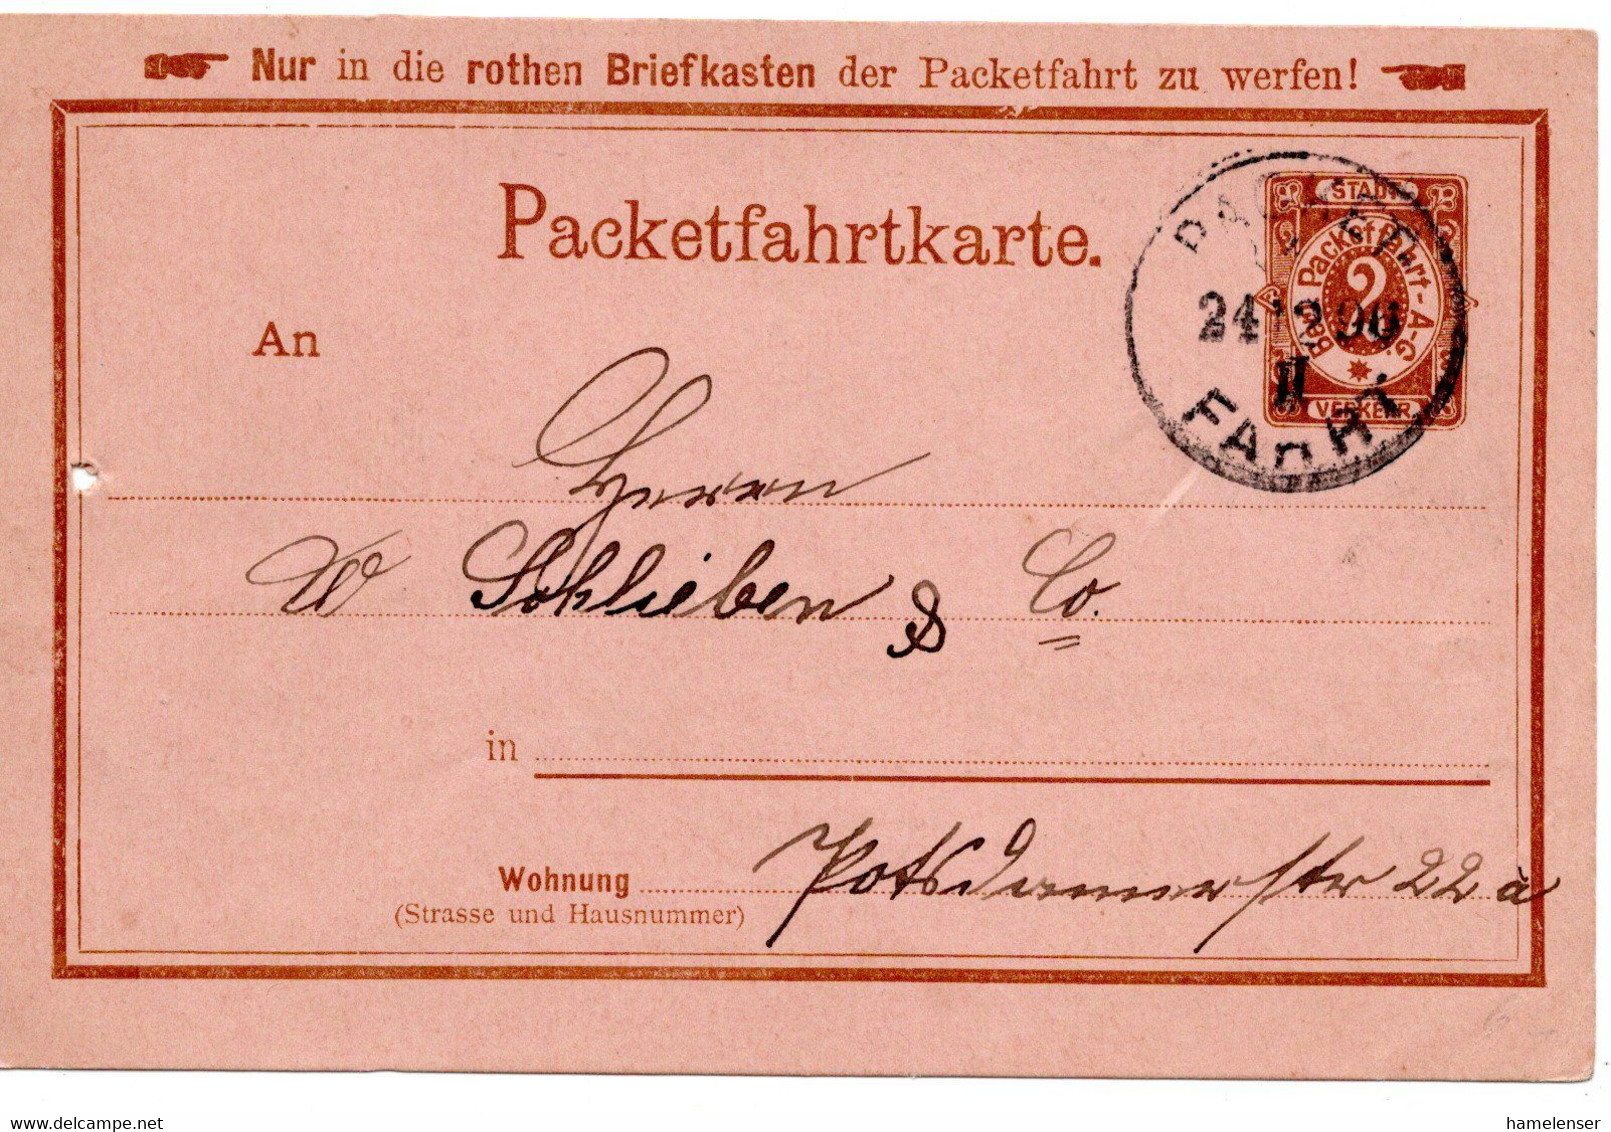 55430 - Deutsches Reich / Berliner Packetfahrt - 1896 - 2Pfg. GAKte. PACKET FAHRT - Private & Local Mails